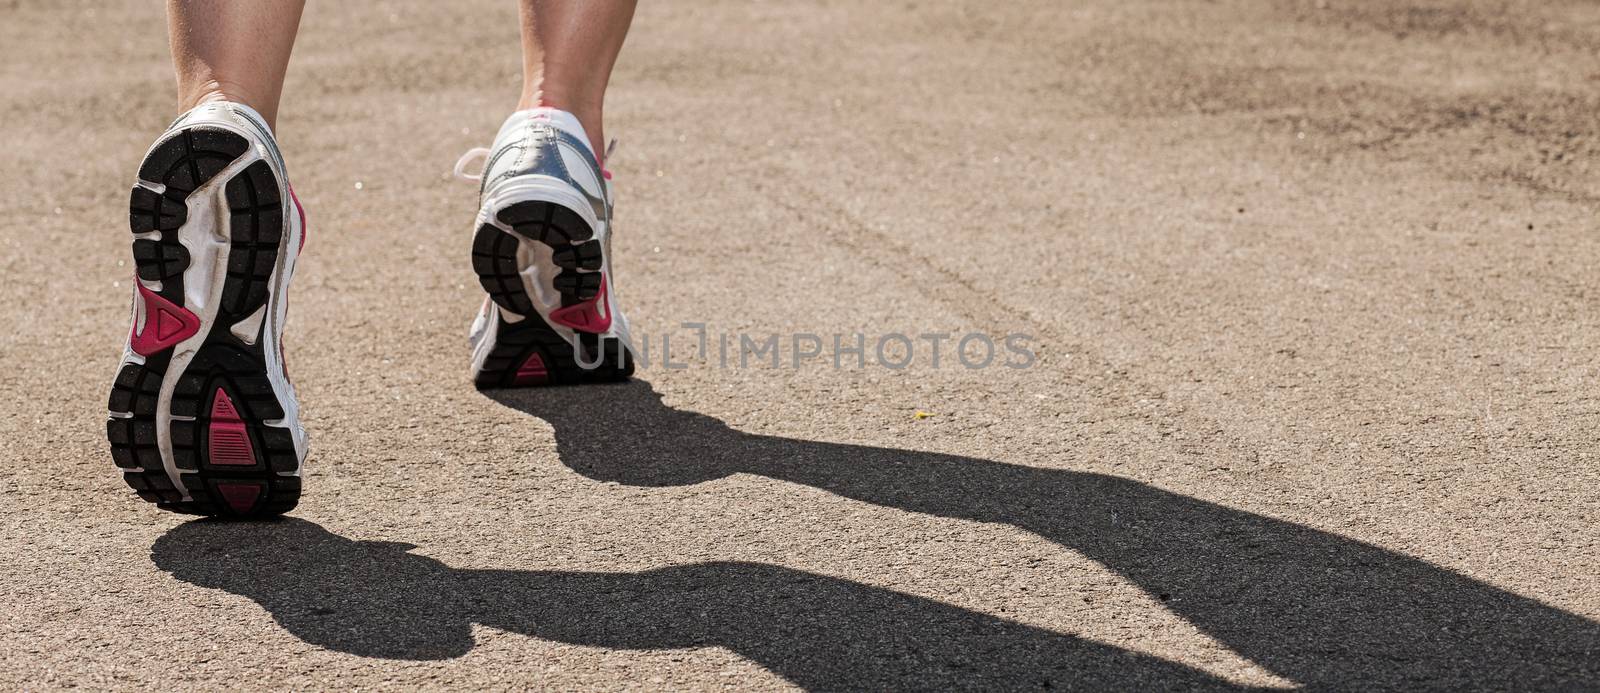 Woman legs in sneakers on asphalt by rufatjumali